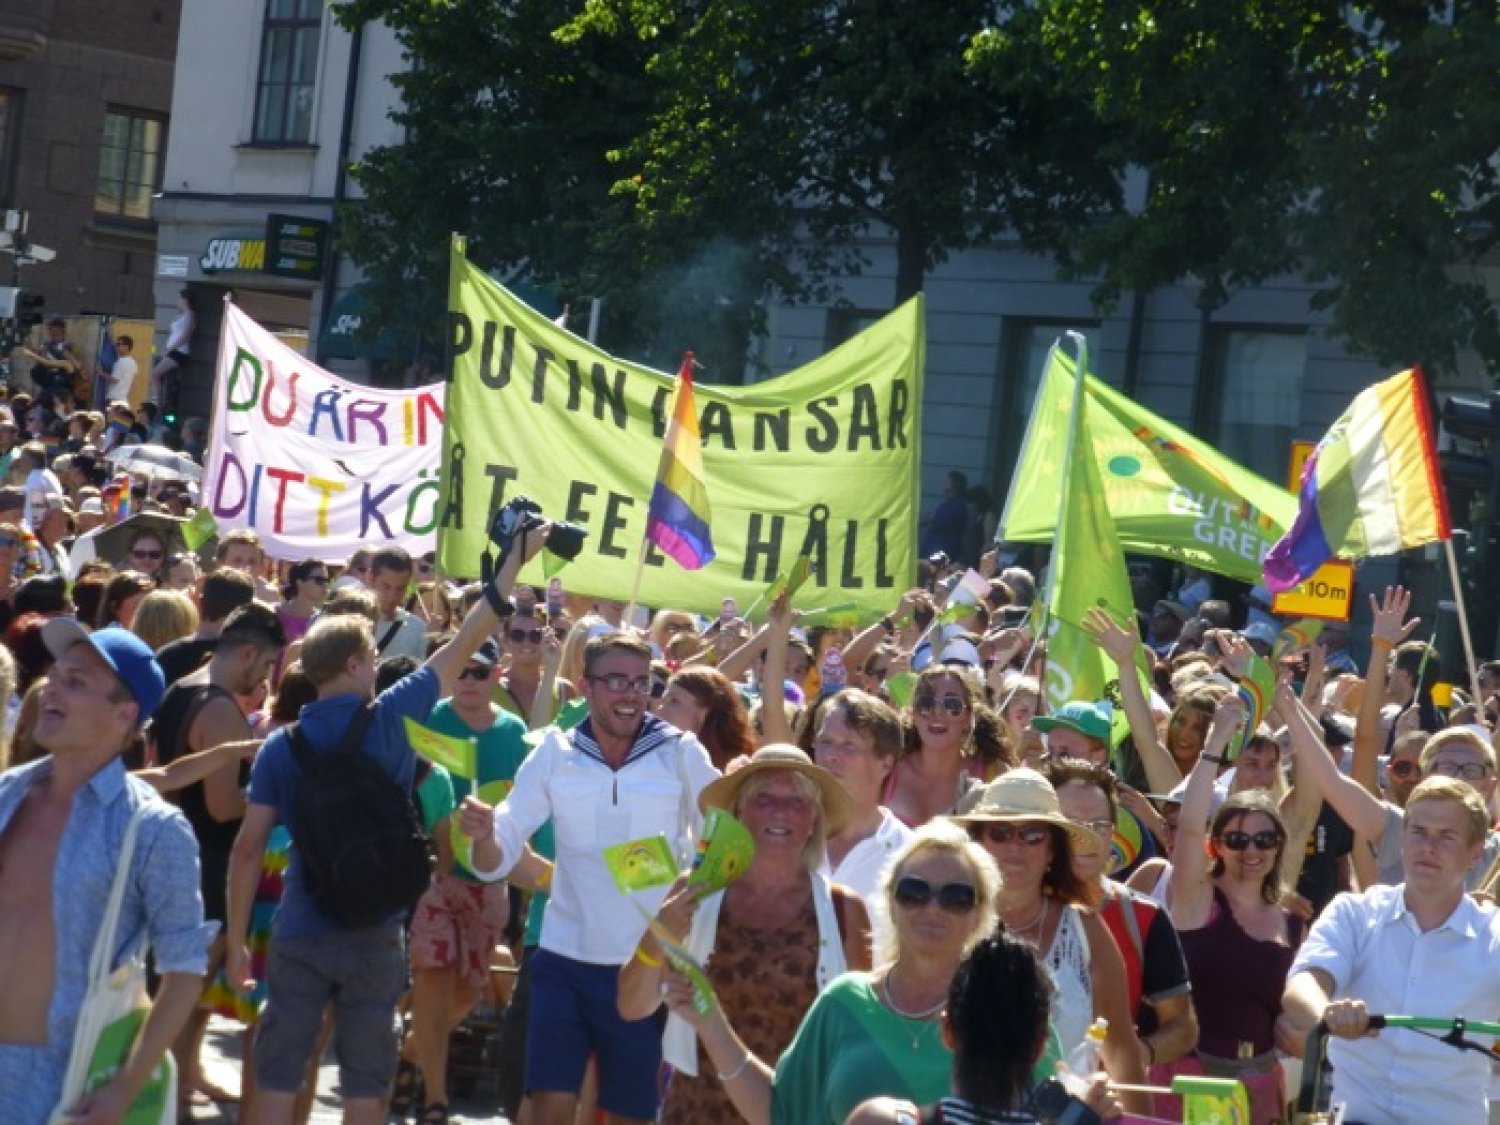 Stockholm Pride - La parade 2013